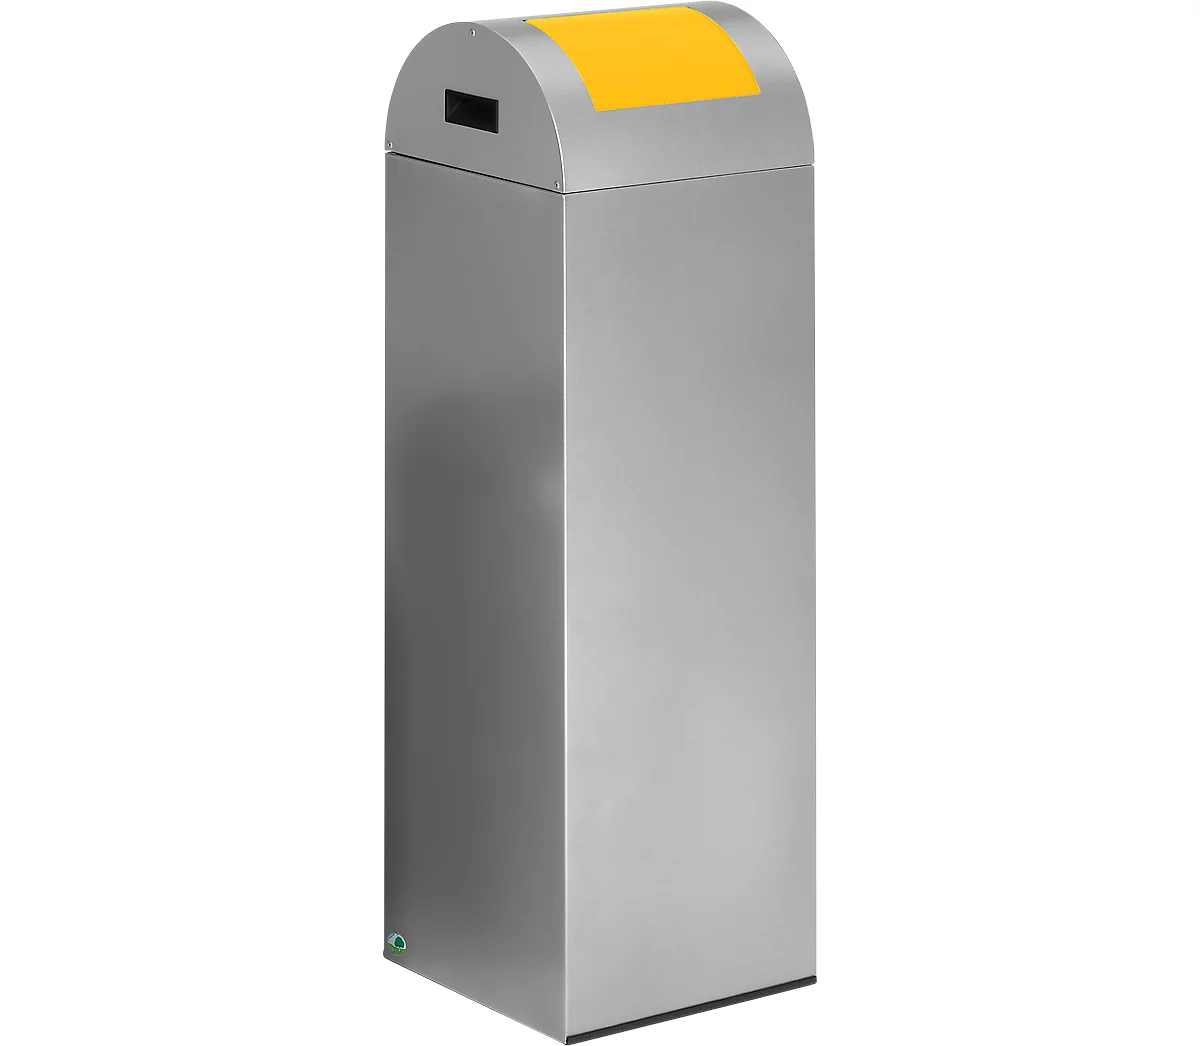 Zelfblussende afvalverzamelaar voor recycleerbaar afval 85R, zilver/geel